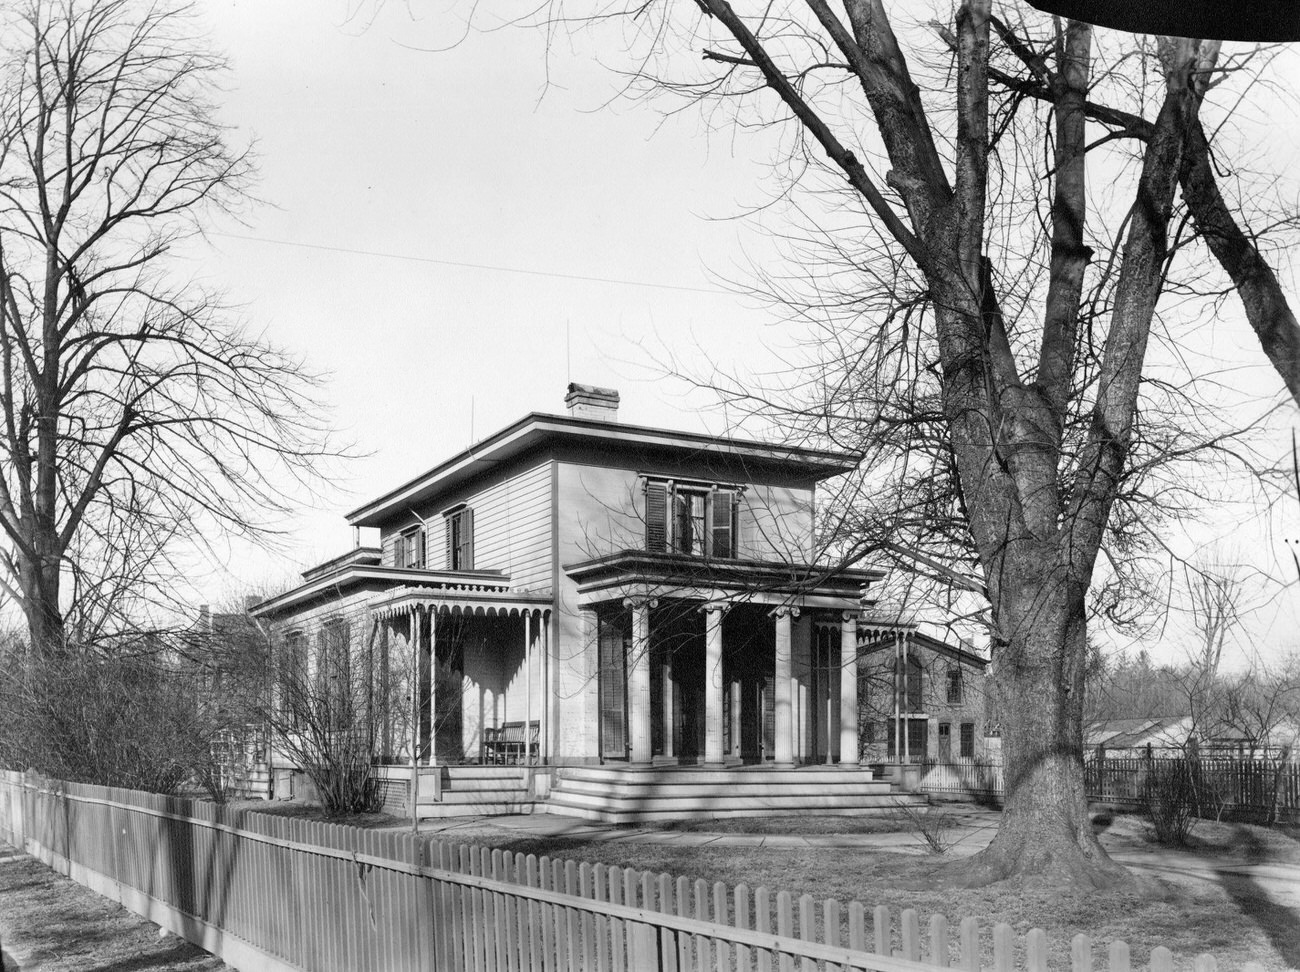 Unidentified Greek Revival House In Flatbush, Brooklyn, 1895